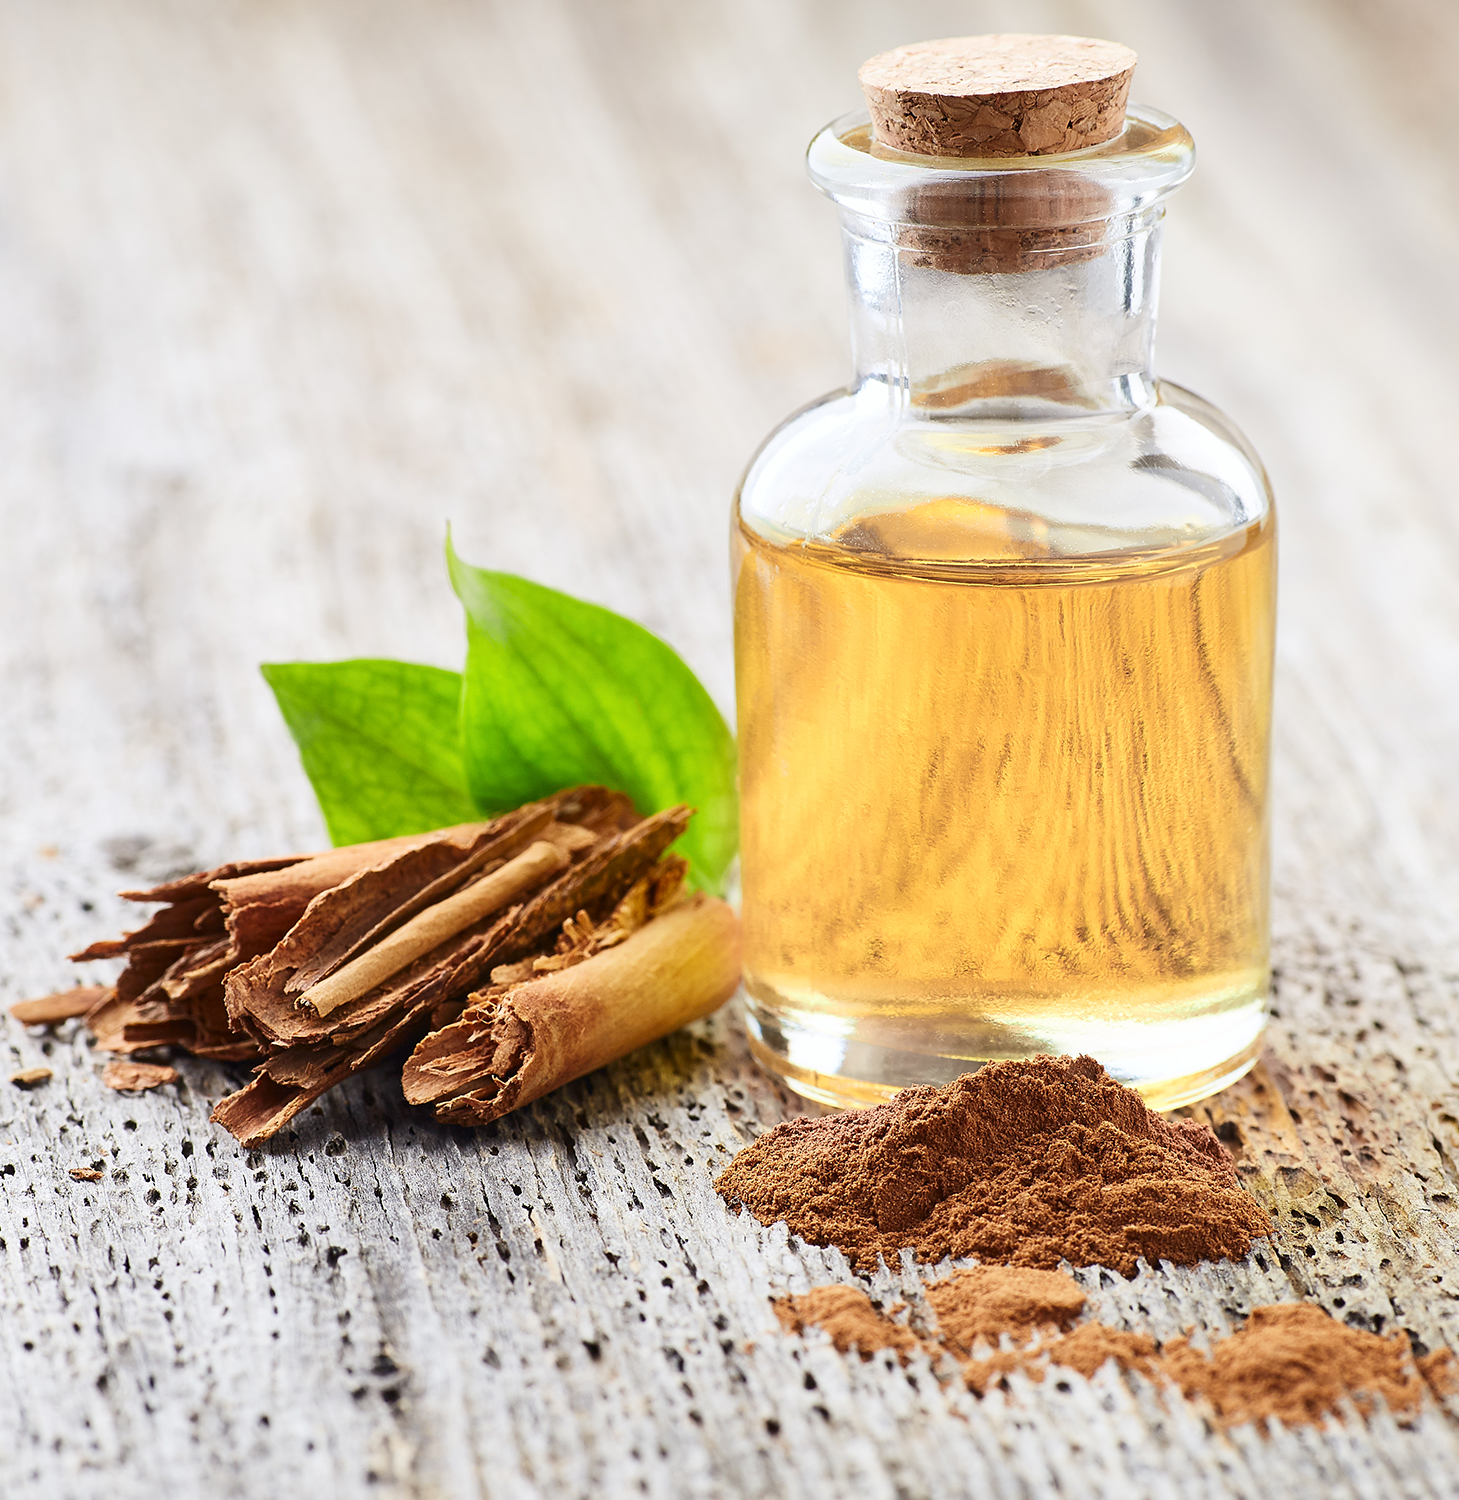 Cinnamon Essential Oil (Leaf)